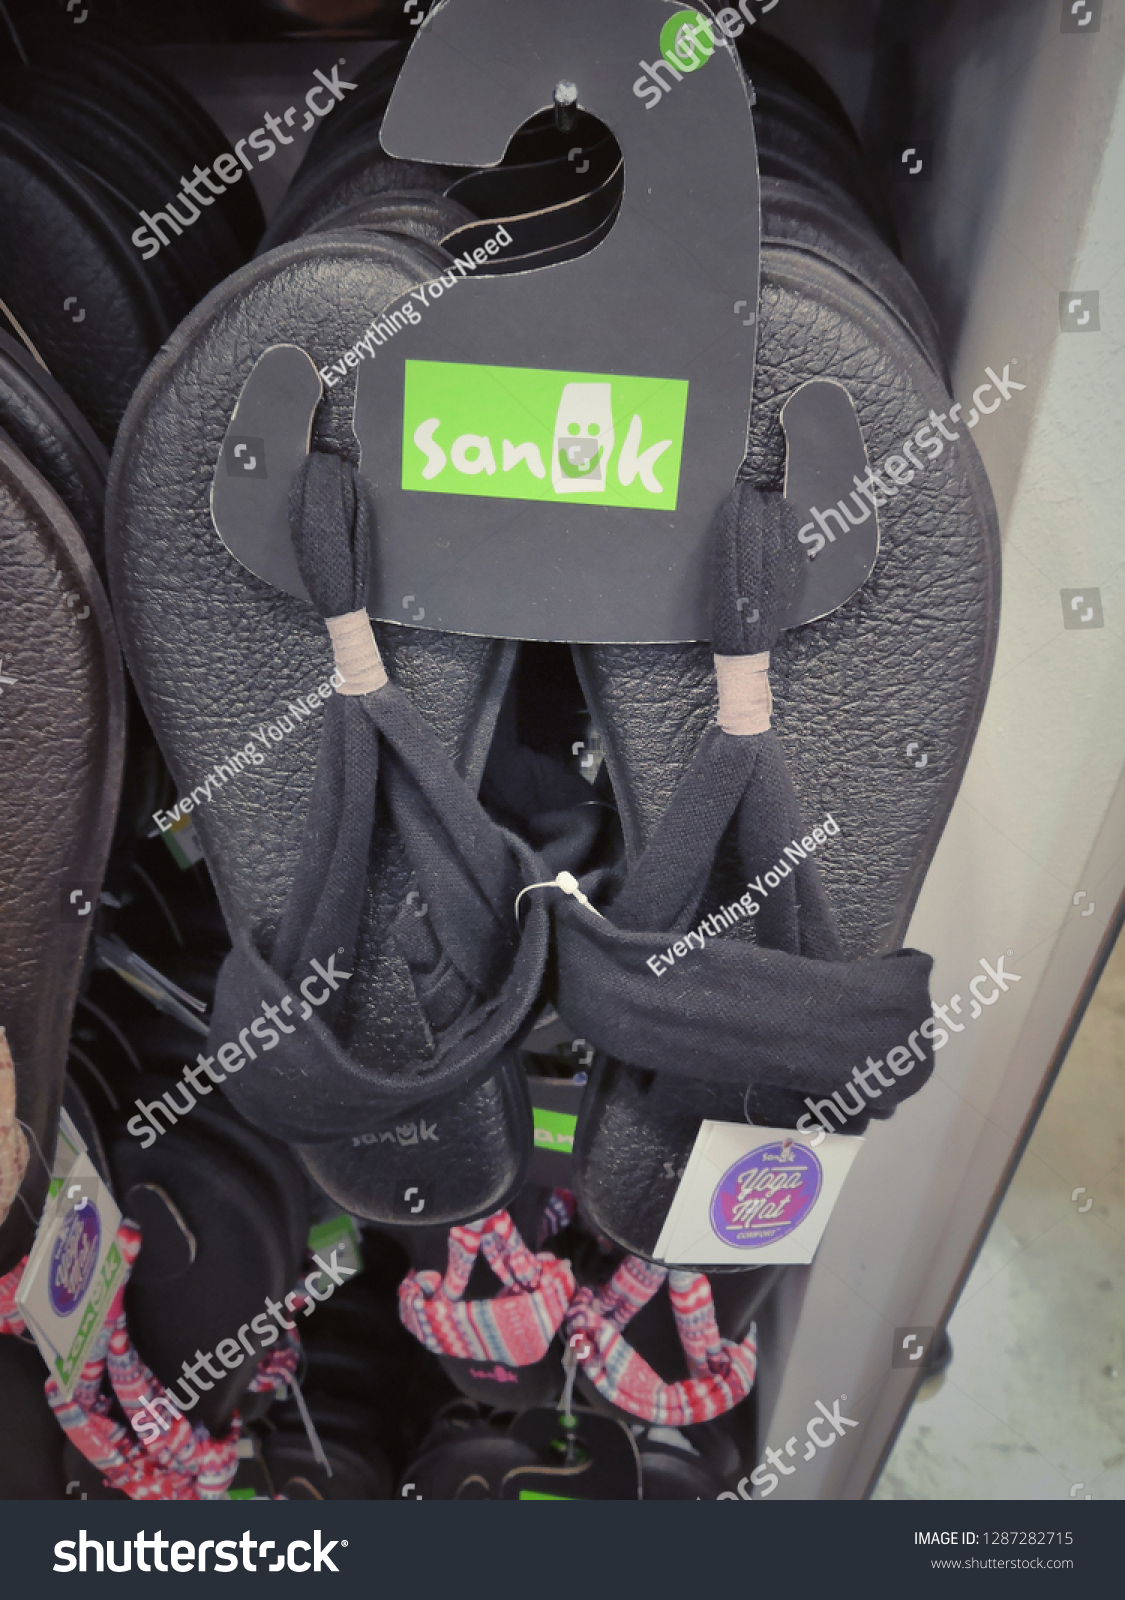 sanuk shoes sale